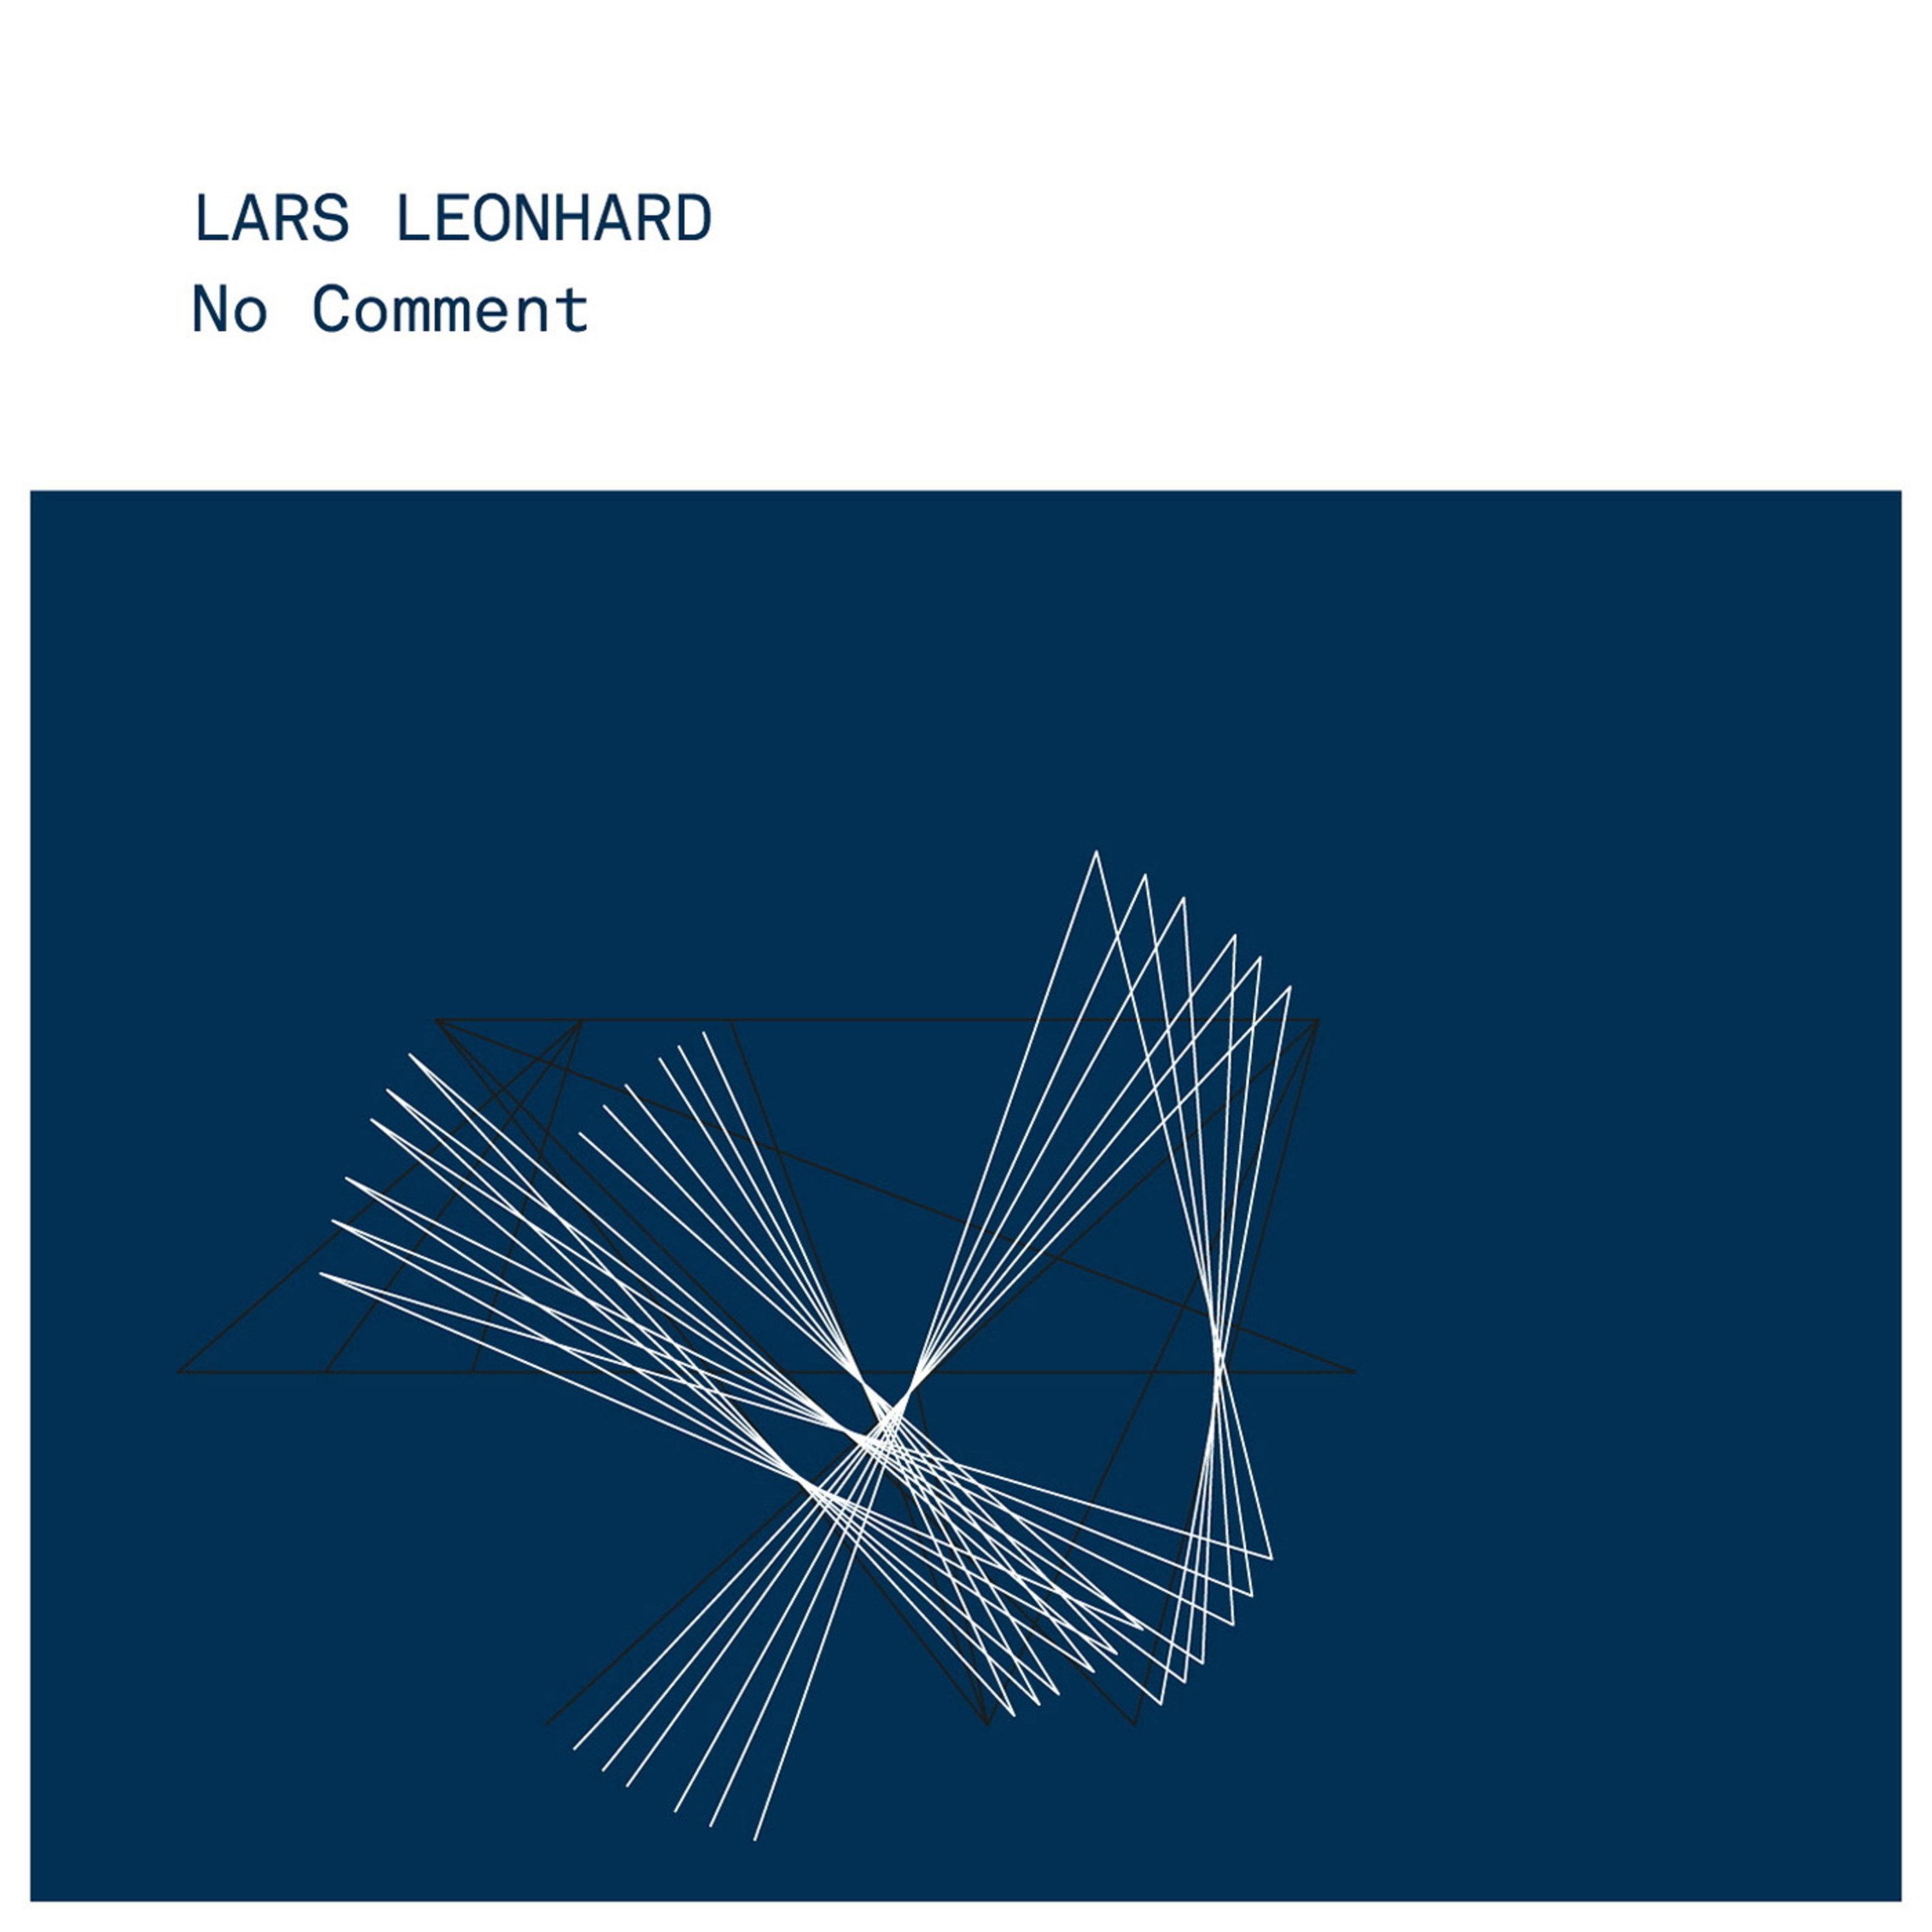 Lars Leonhard - No Comment (Quantec Mix)